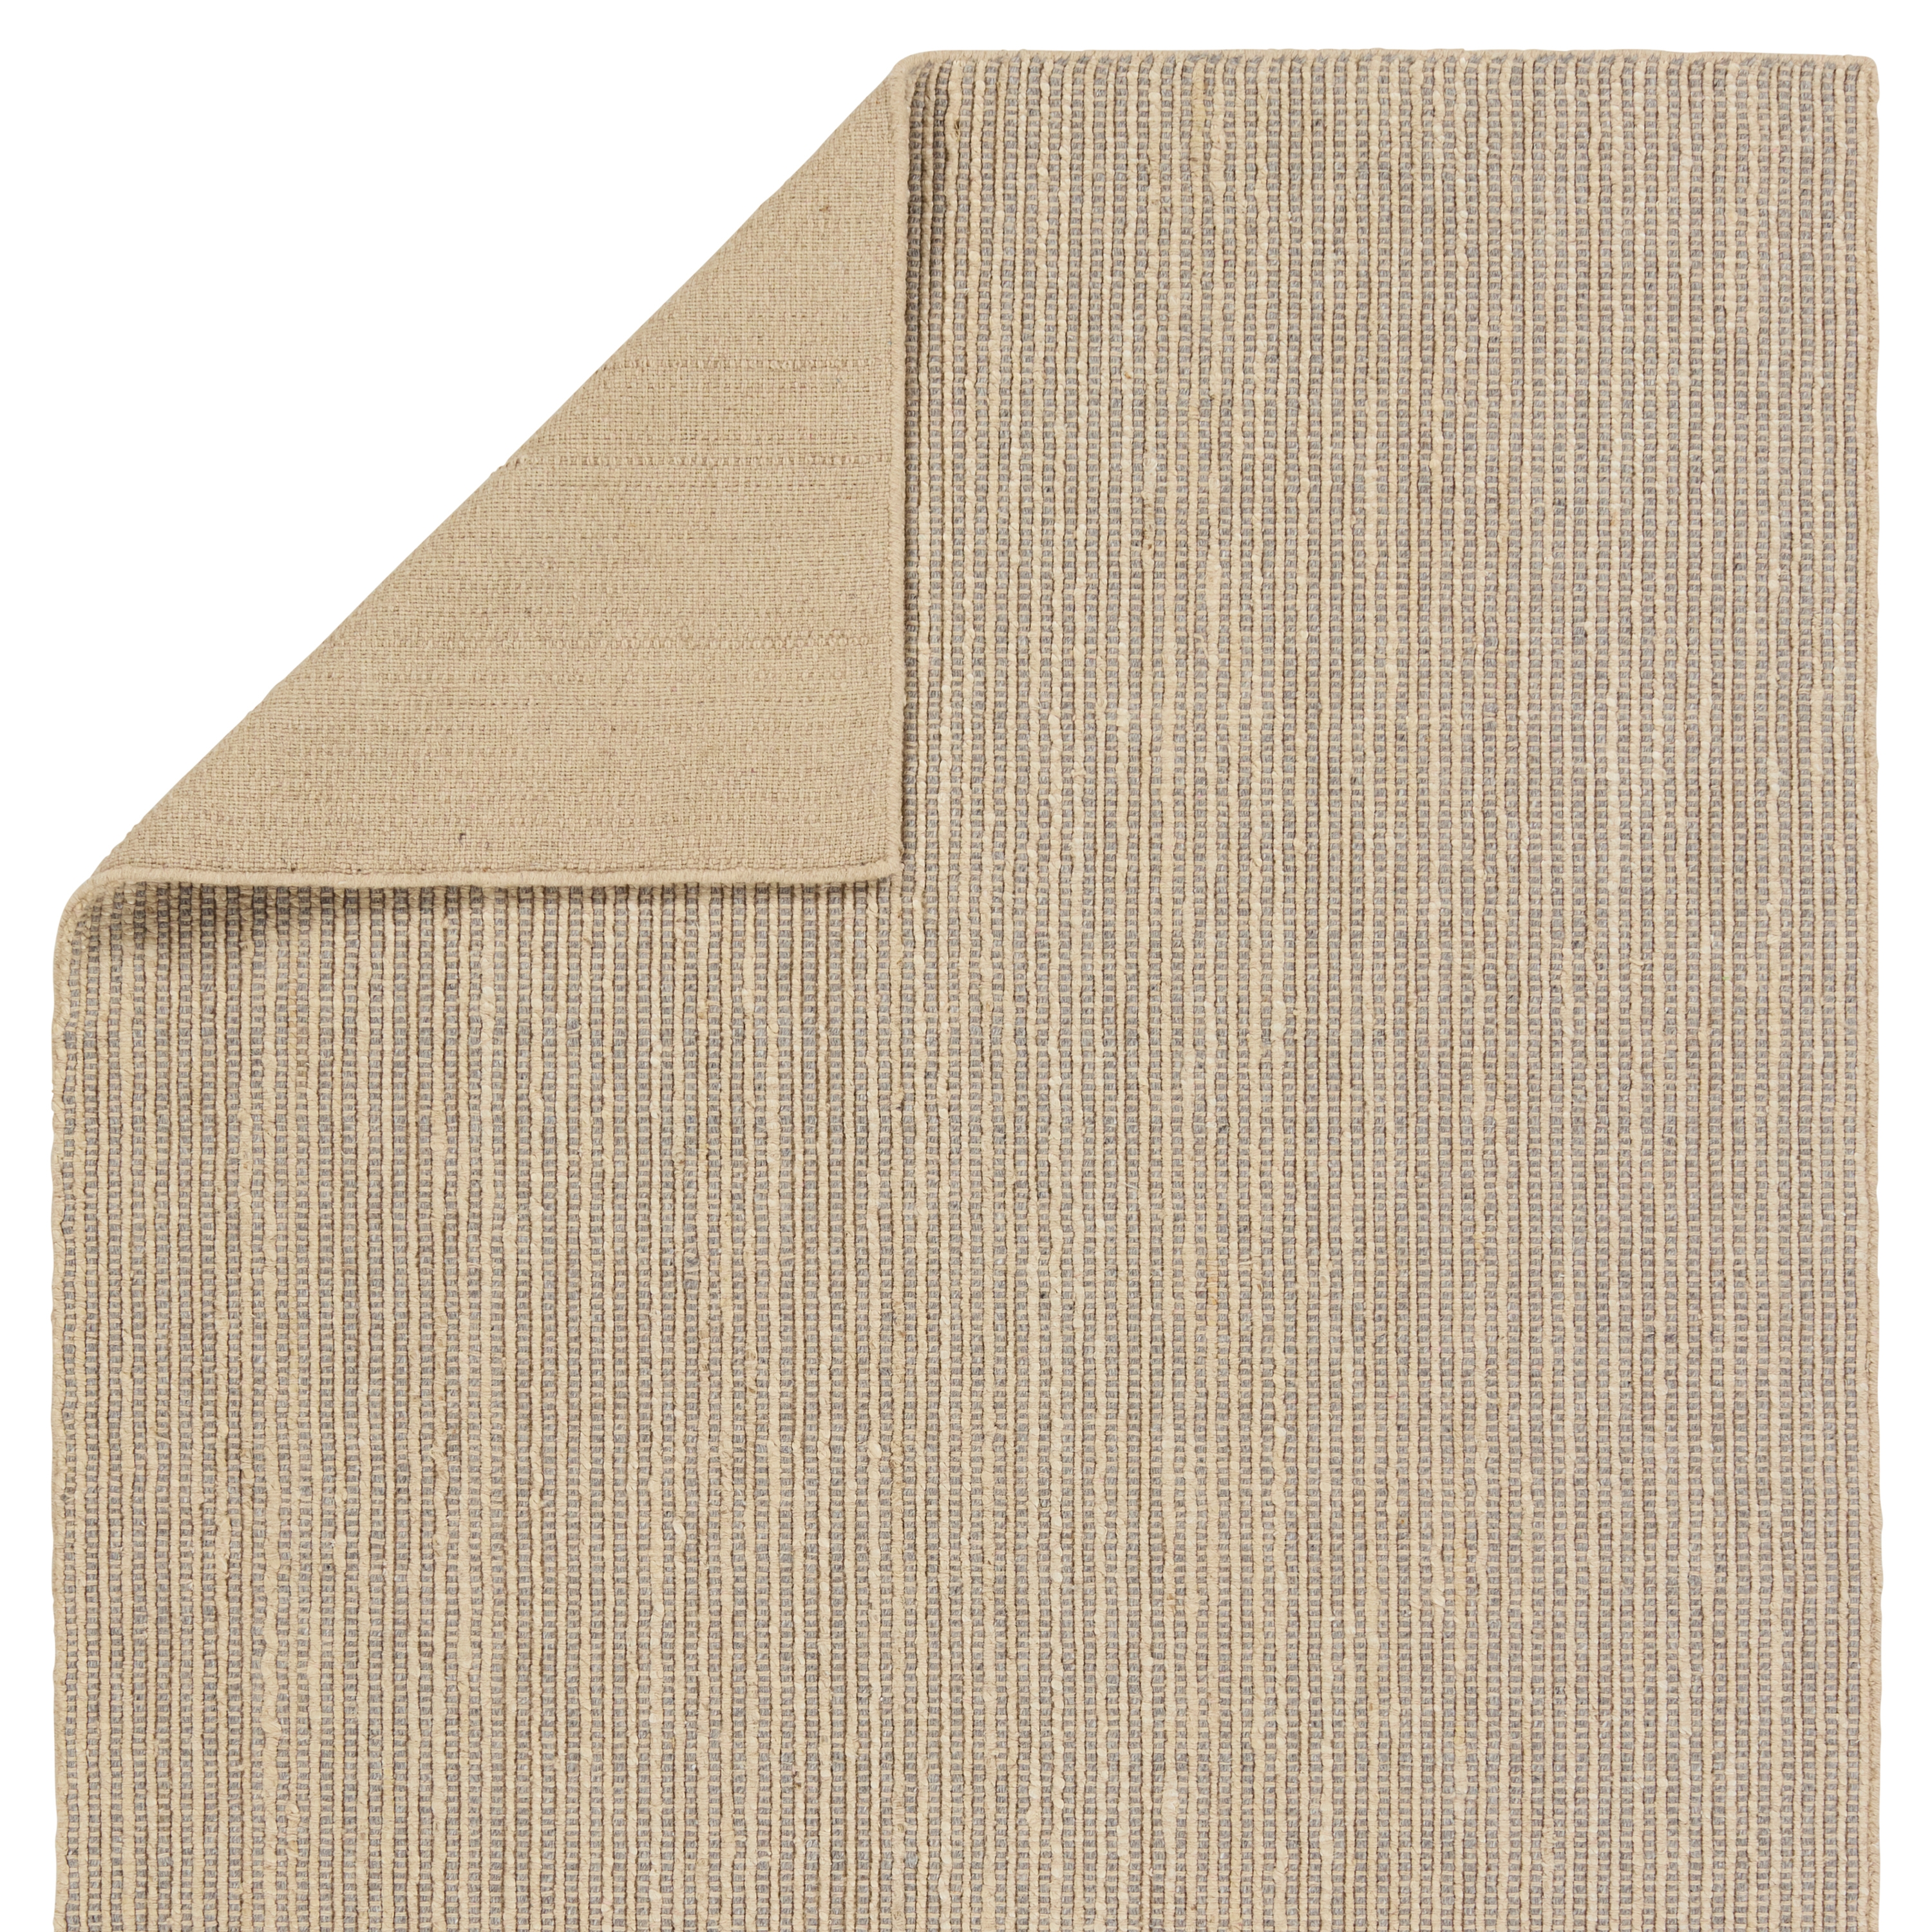 Latona Handmade Striped Gray/ Tan Runner Rug (3'X8') - Image 2